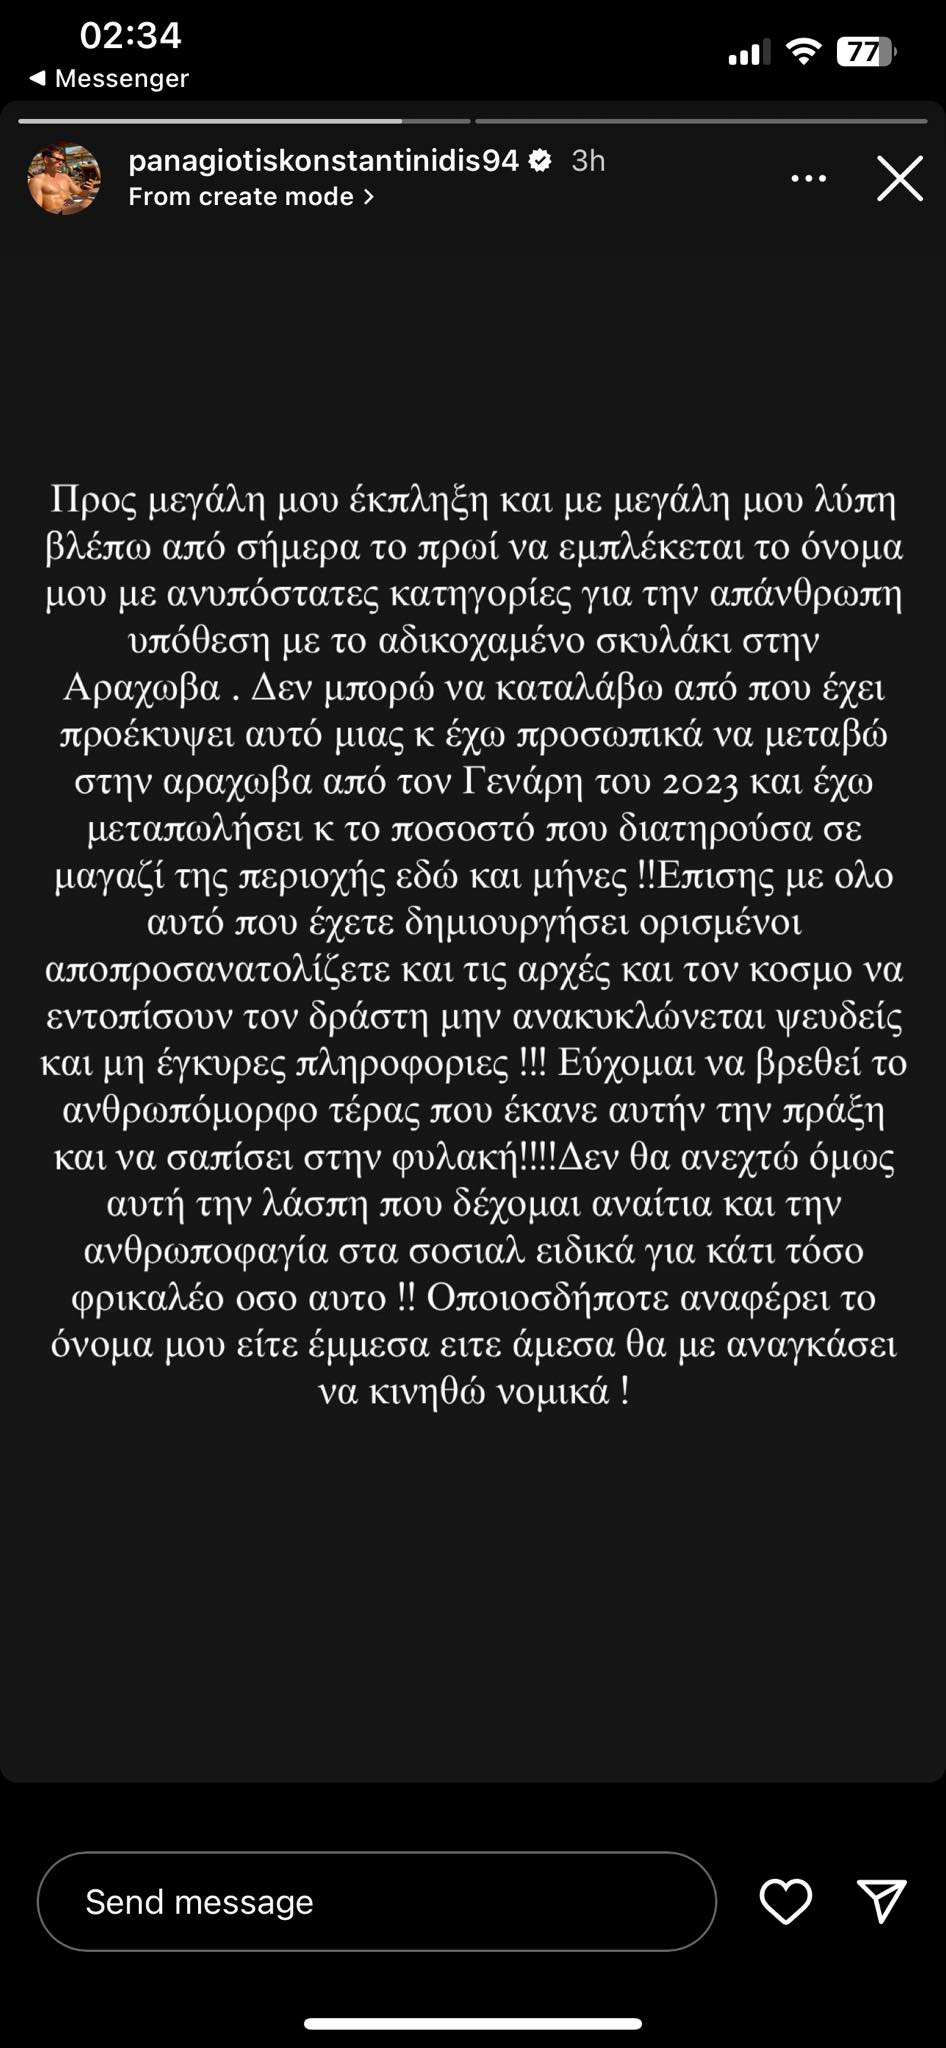 Παναγιώτης Κωνσταντινίδης - Αράχωβα: H απάντηση του πρώην παίκτη του Survivor για την εμπλοκή του ονόματός του στη δολοφονία του χάσκι Όλιβερ (Pics)